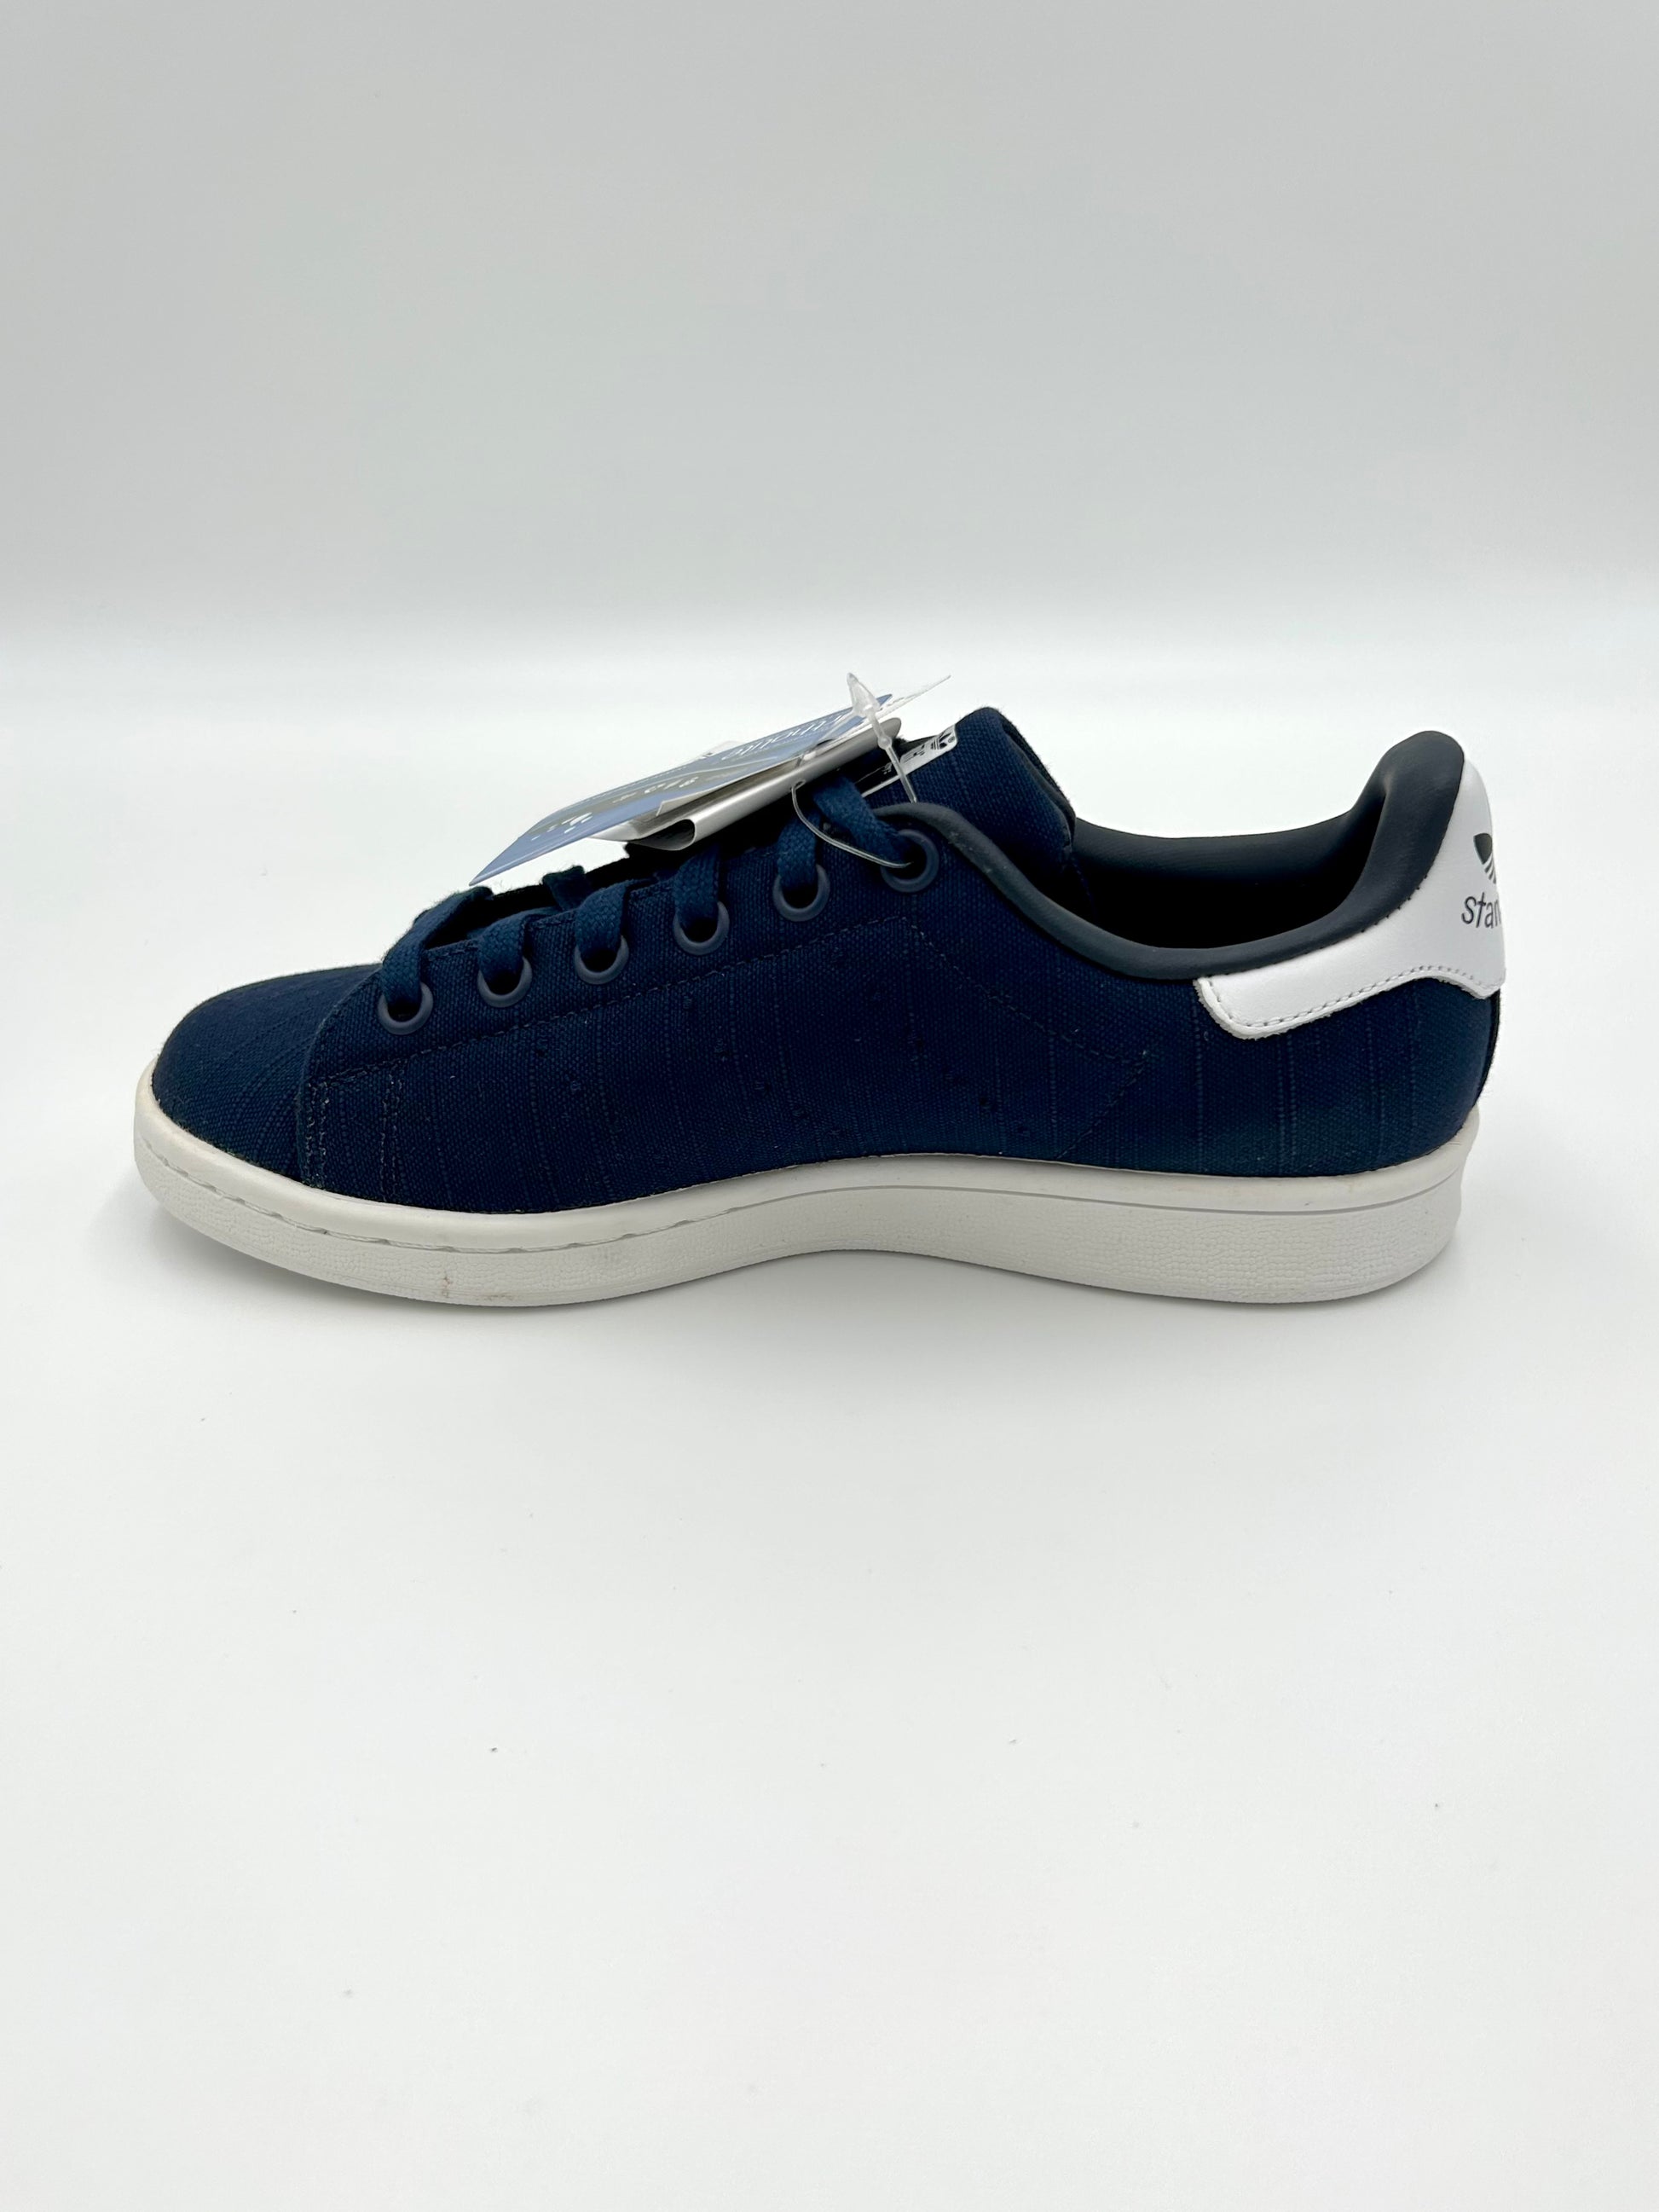 Adidas Stan Smith W S75950 co navy - blu e bianco - Adidas